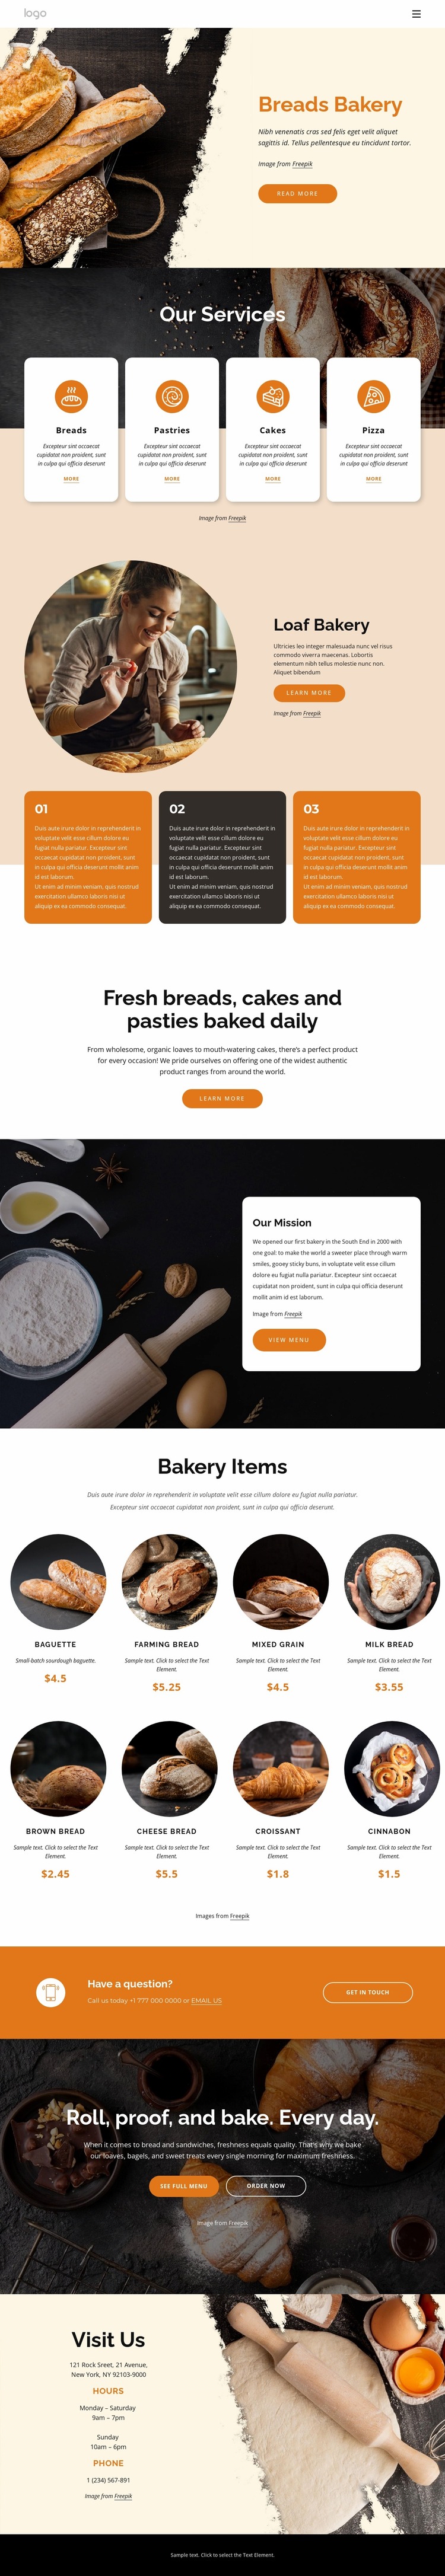 Breads bakery Website Mockup